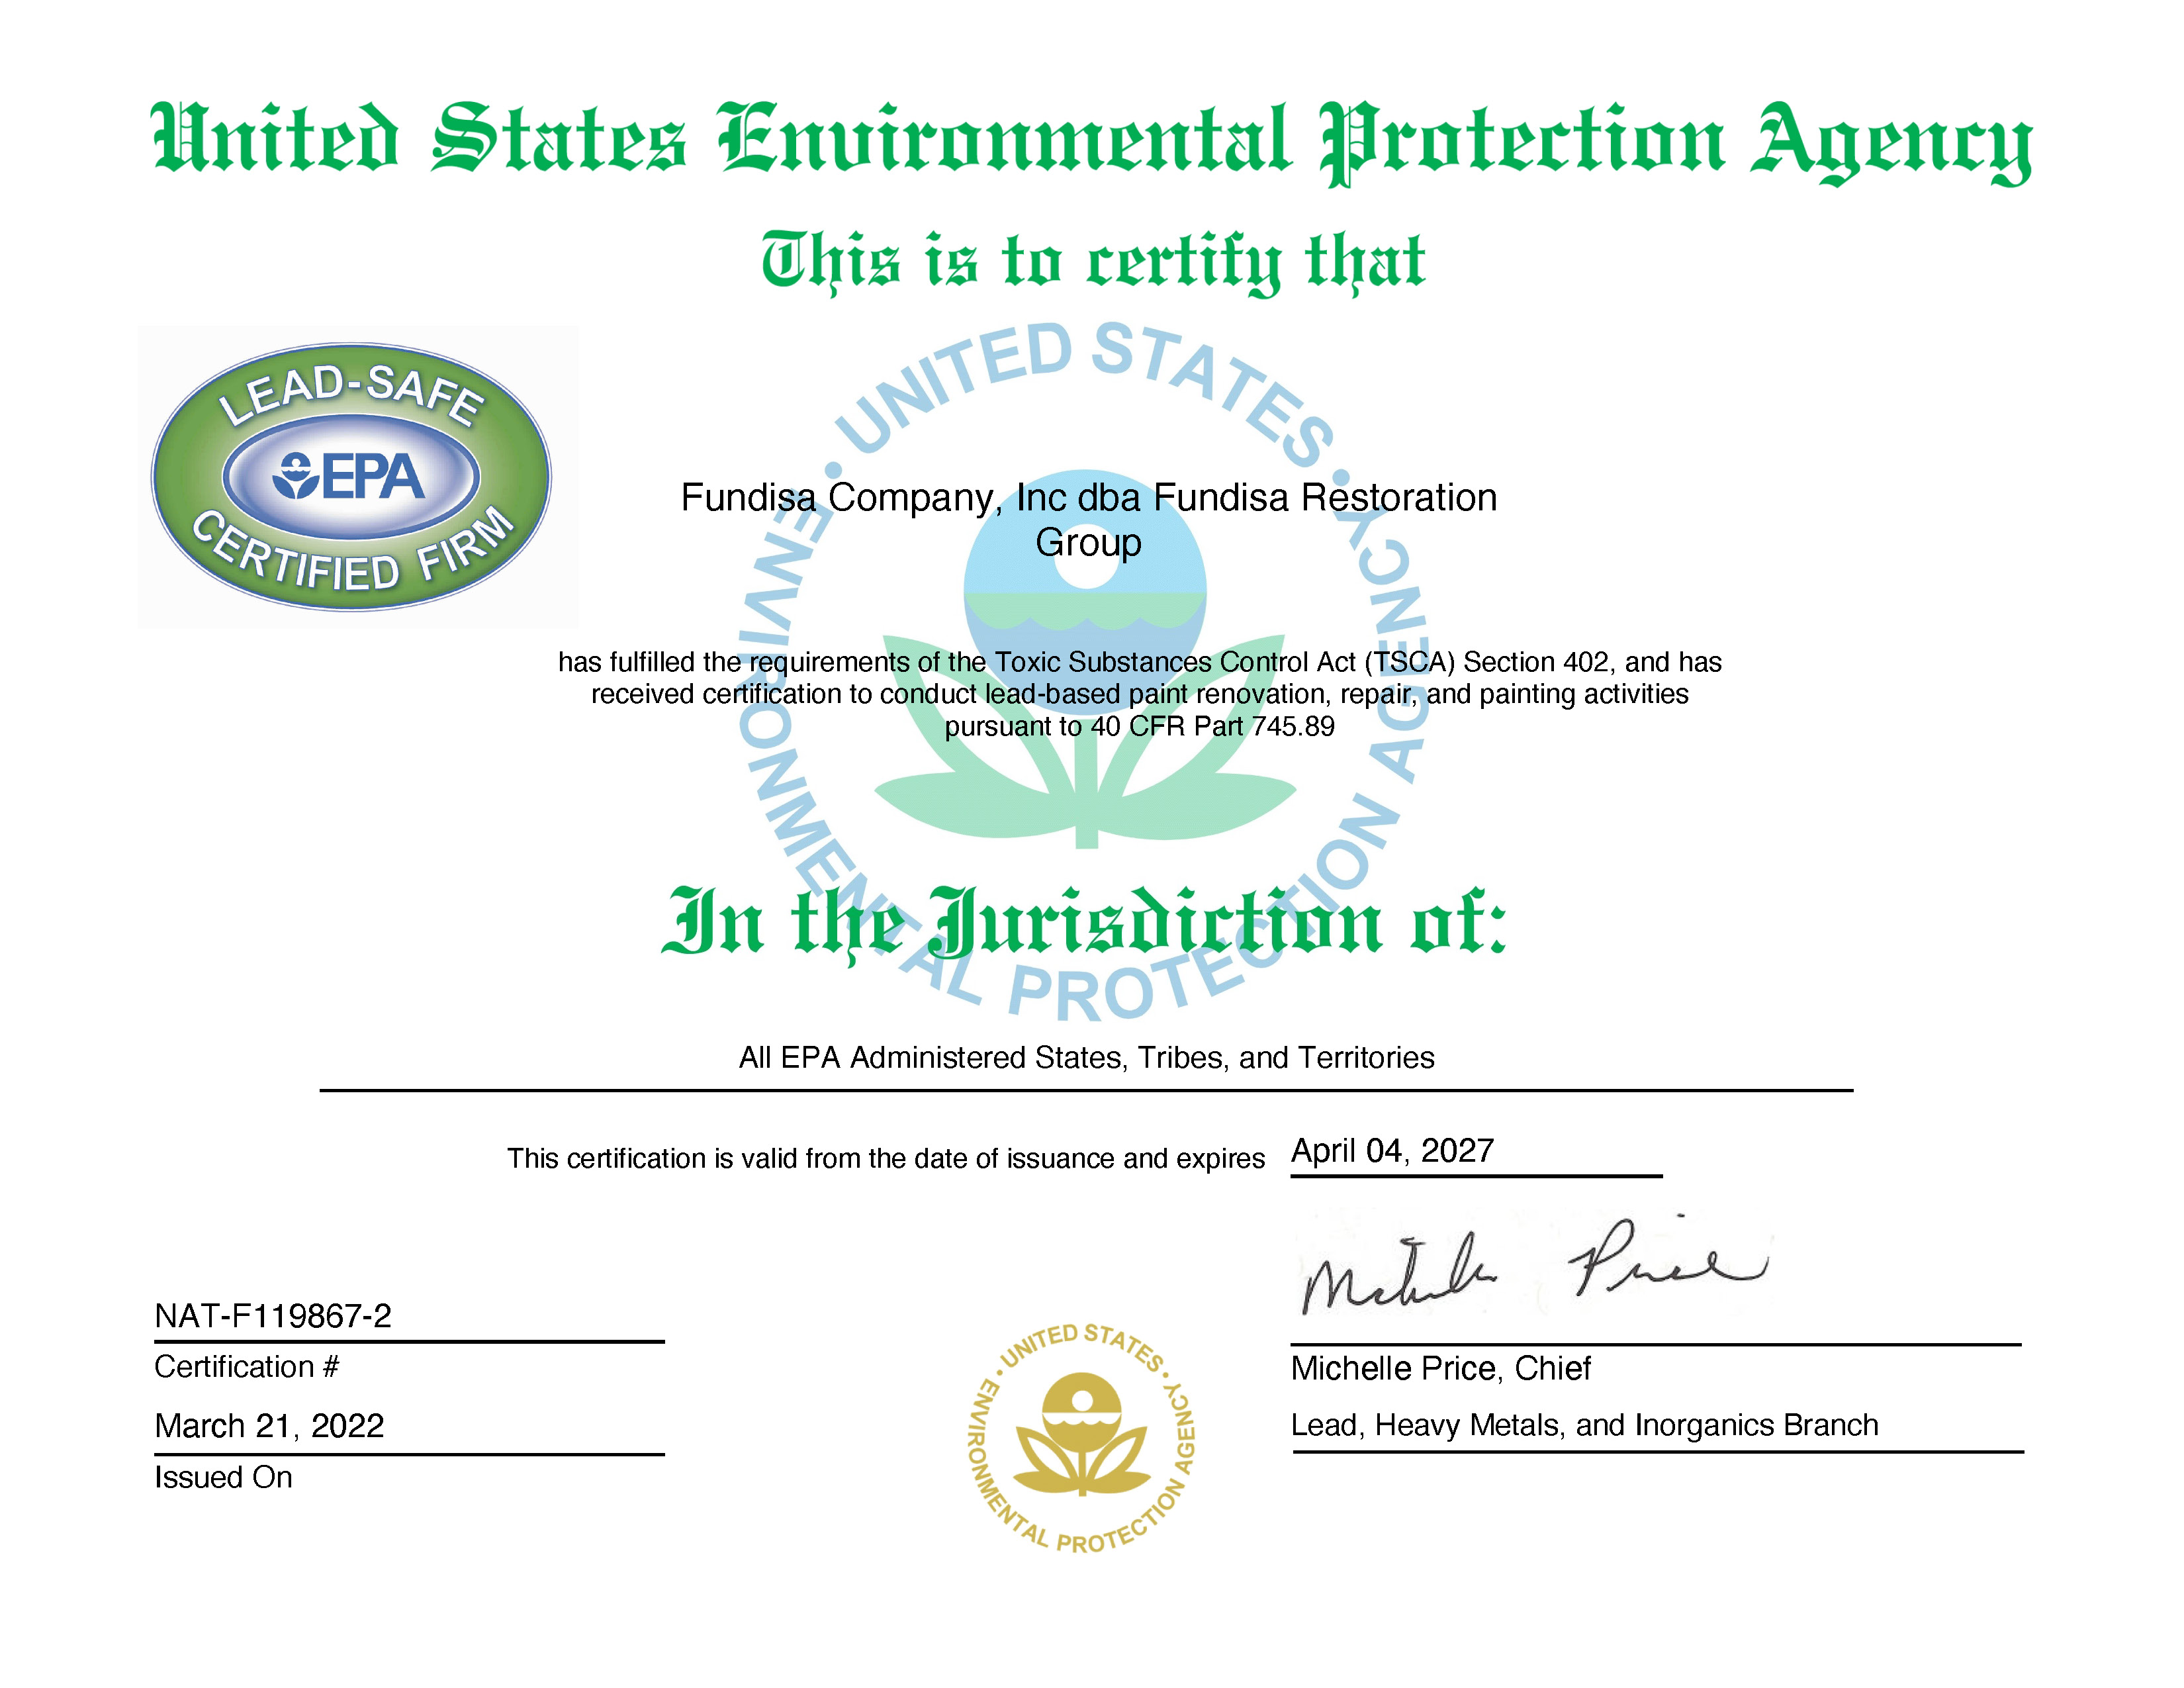 EPA Lead Safe Certifiate